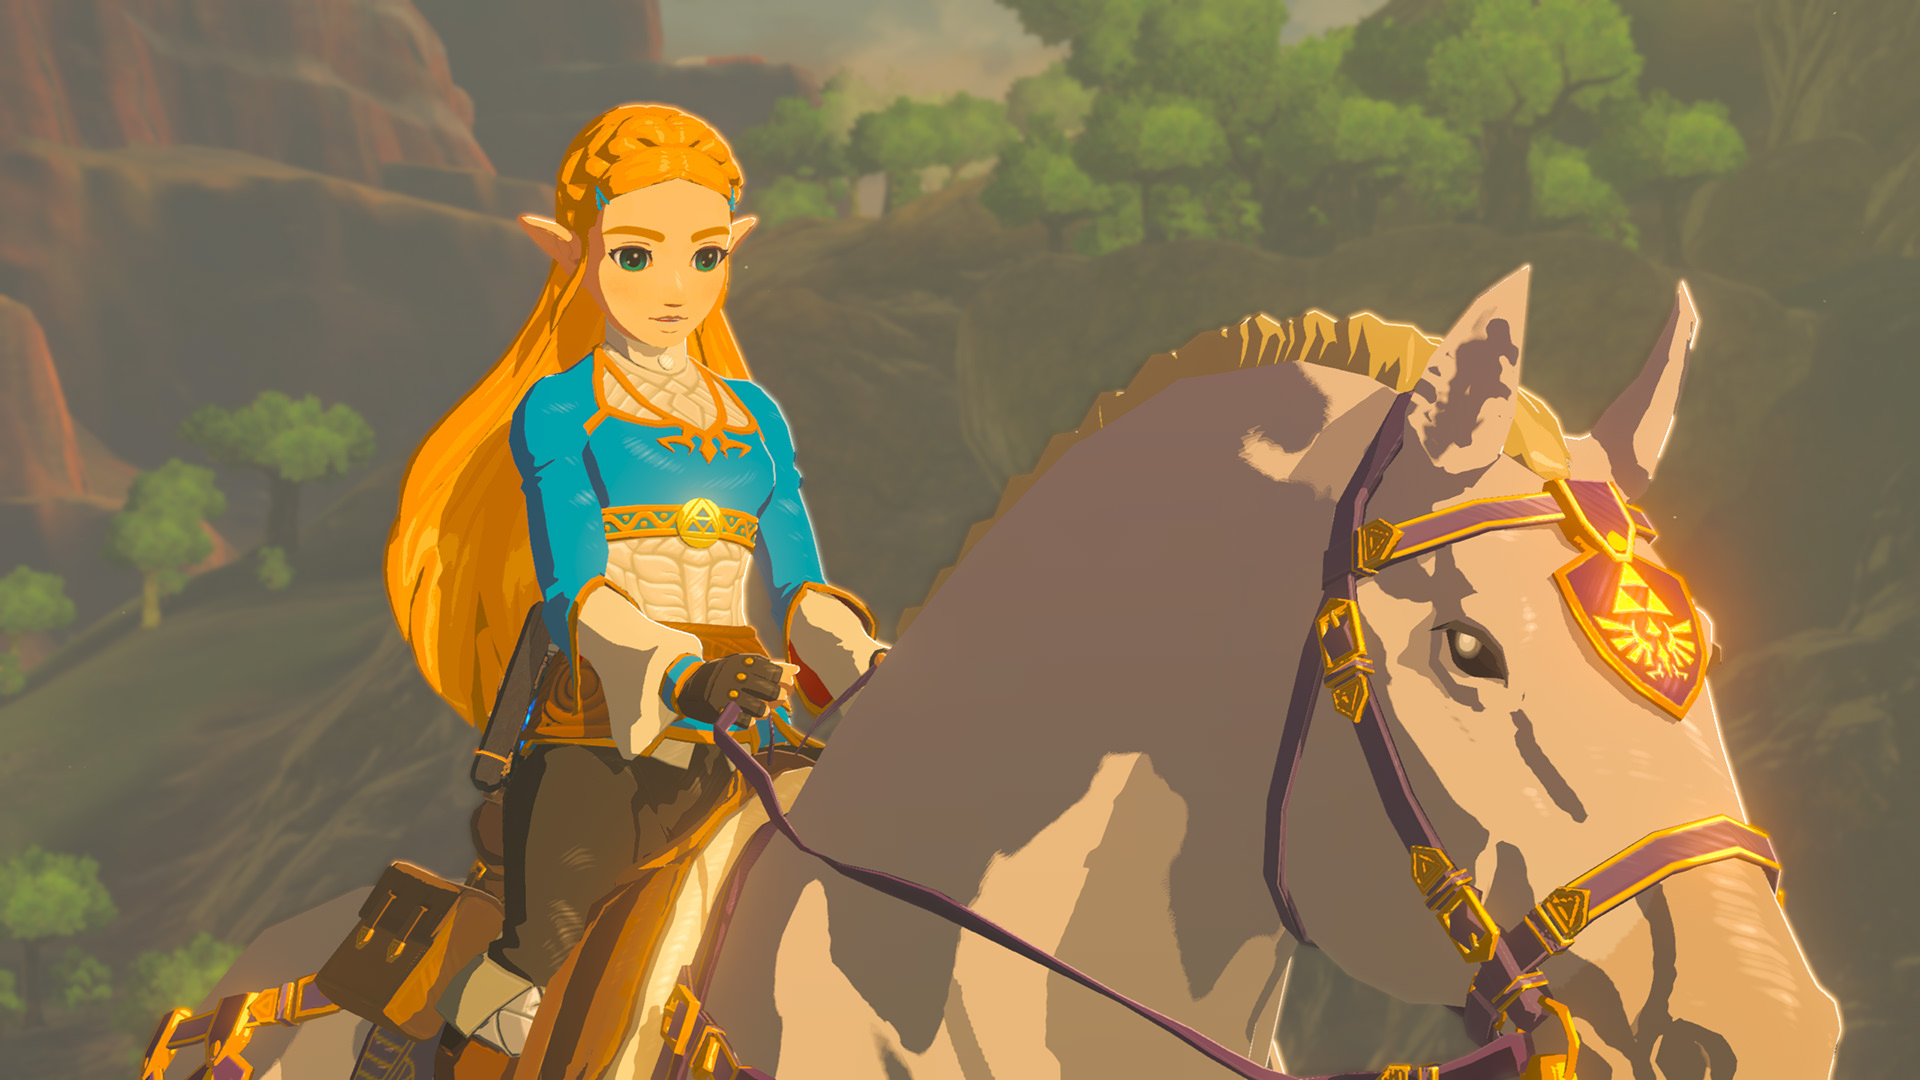 زلدا احتمالاً شخصیت اصلی بازی جدید The Legend of Zelda خواهد بود